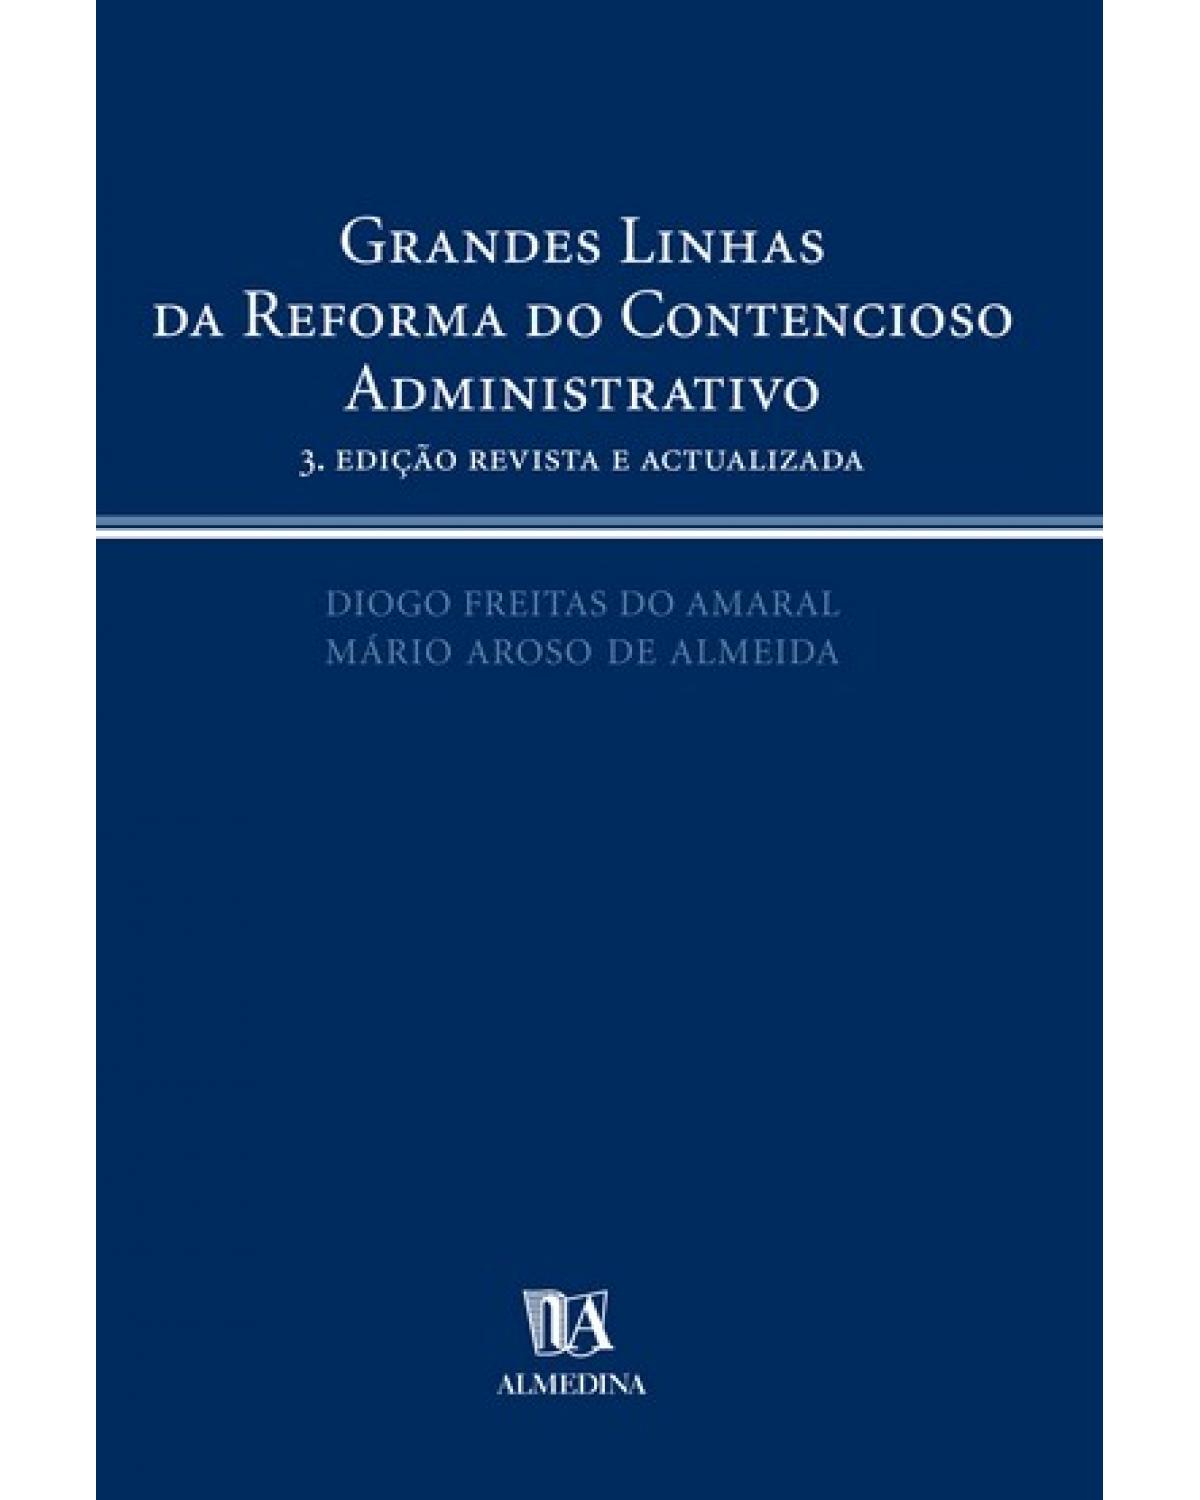 Grandes linhas da reforma do contencioso administrativo - 3ª Edição | 2007